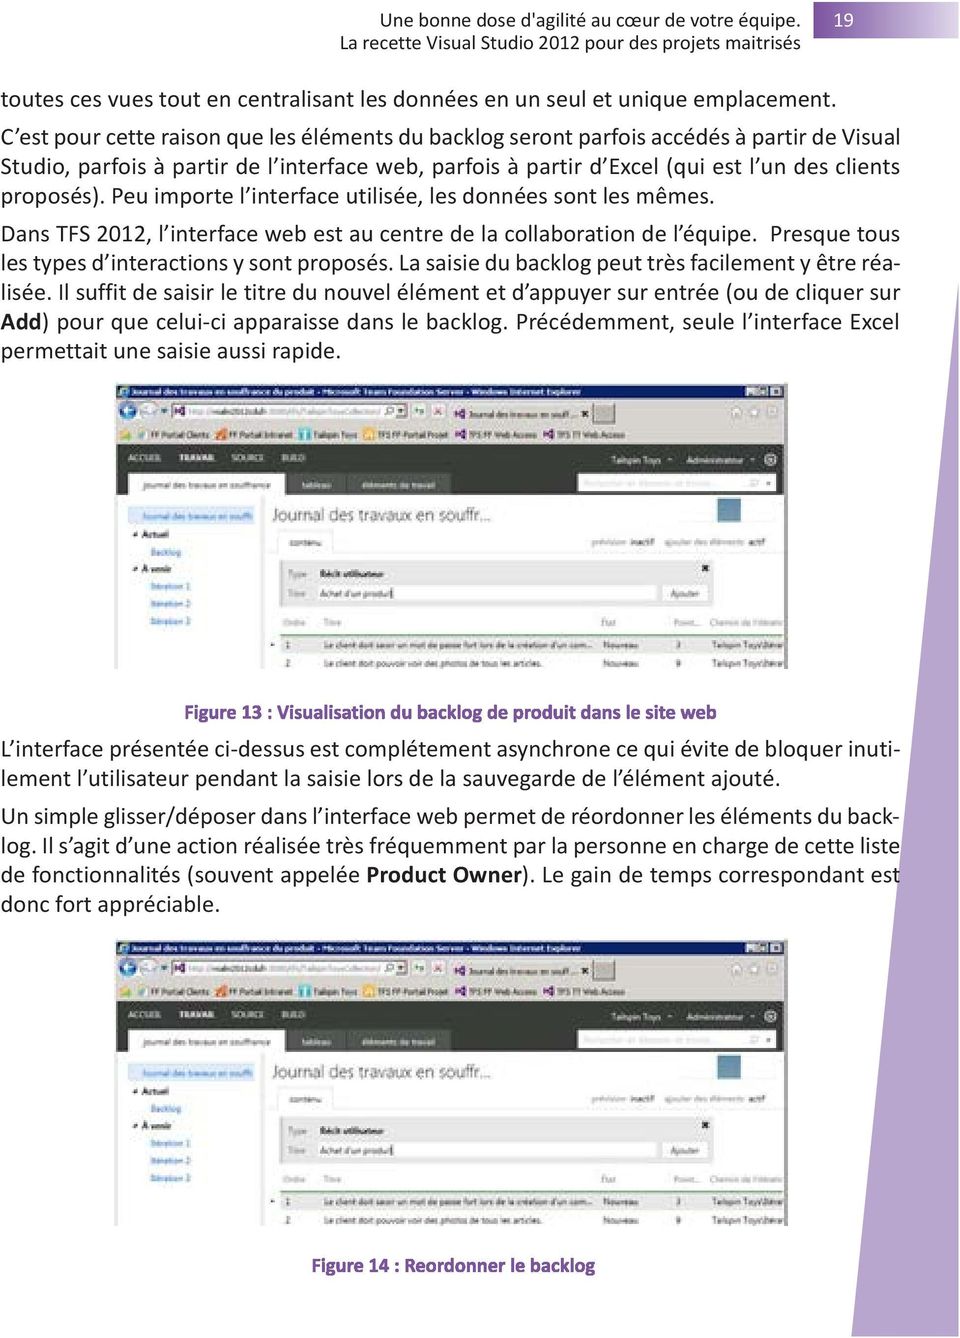 Peu importe l interface utilisée, les données sont les mêmes. Dans TFS 2012, l interface web est au centre de la collaboration de l équipe. Presque tous les types d interactions y sont proposés.